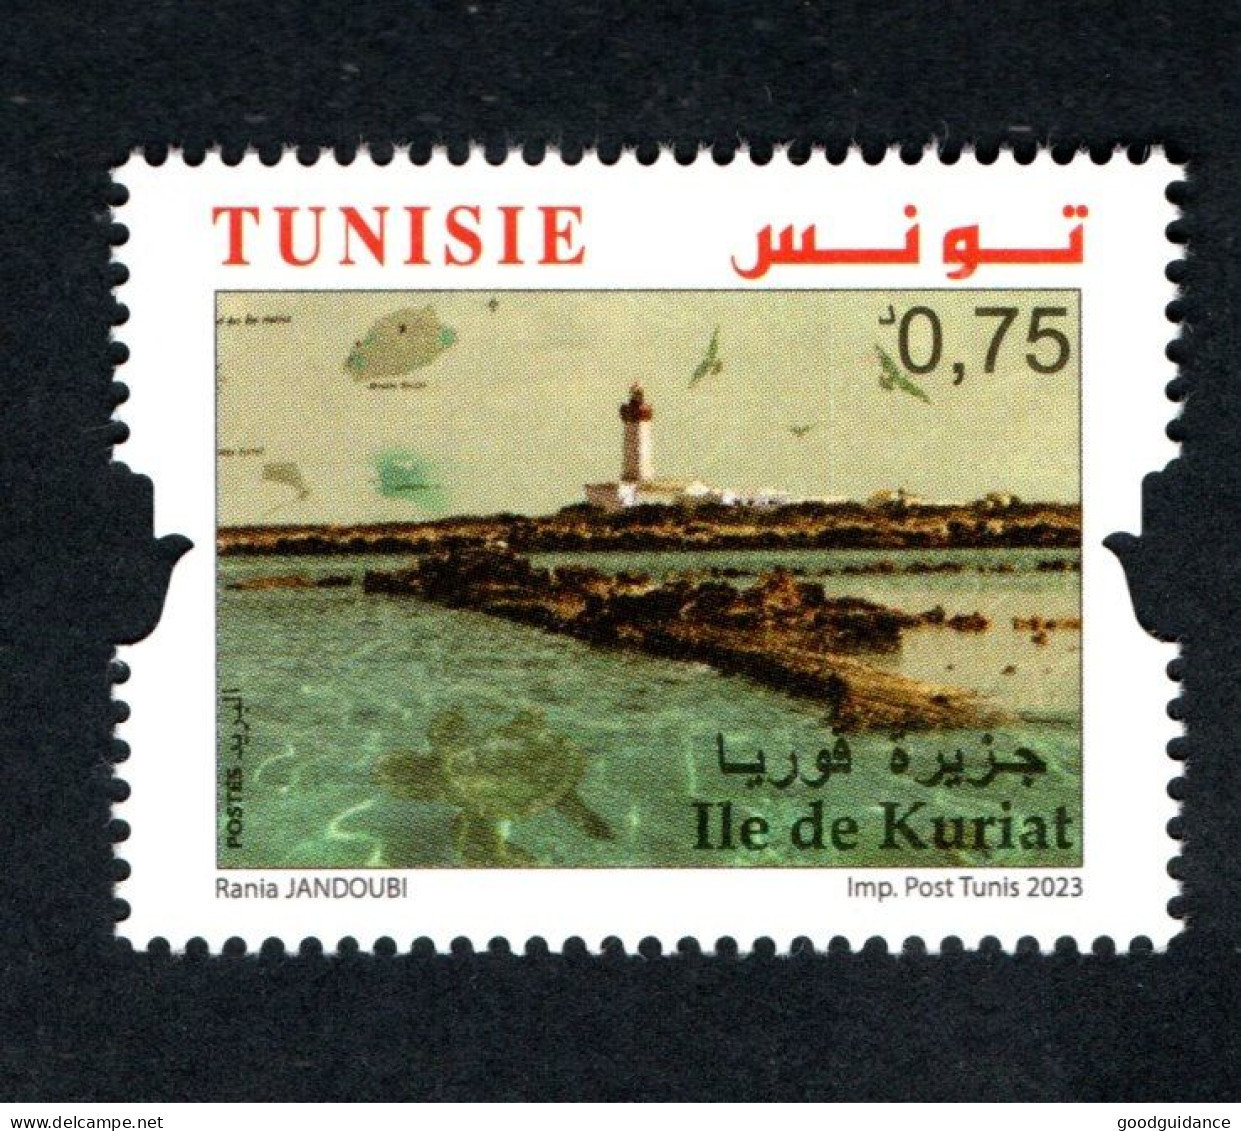 2023- Tunisia - Islands : Kuriat - Lighthouse - Sea Turtle -  1v.MNH** - Tunisia